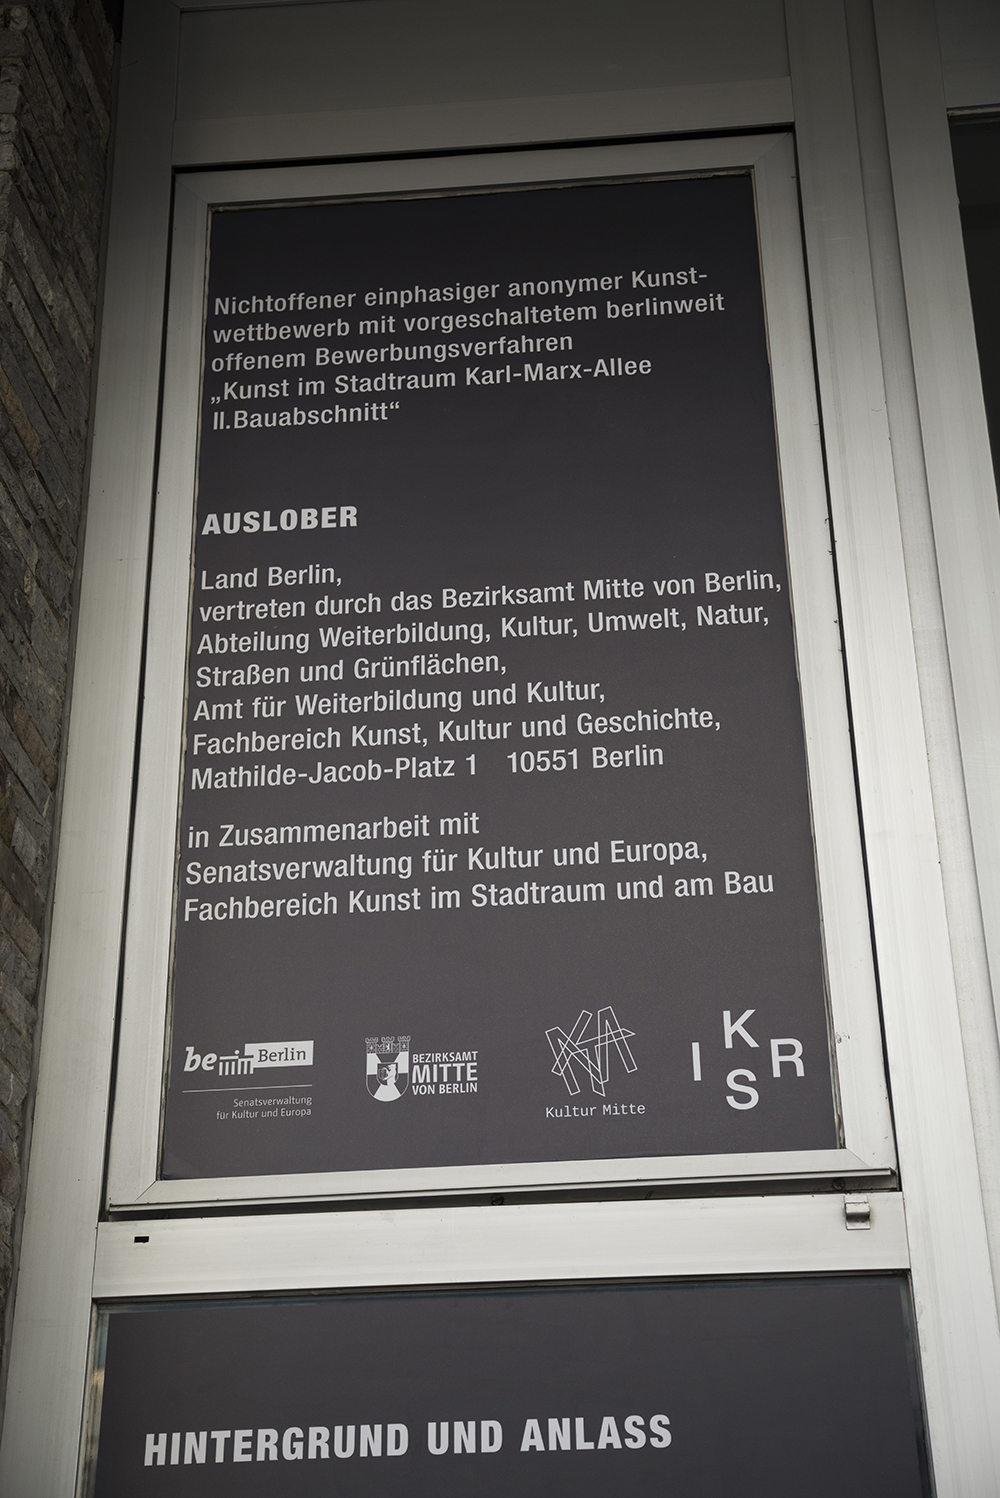 <p>2020<br />
International Bun  -<br />
Kunst im Stadtraum Berlin 'Karl Marx Allee'</p>
